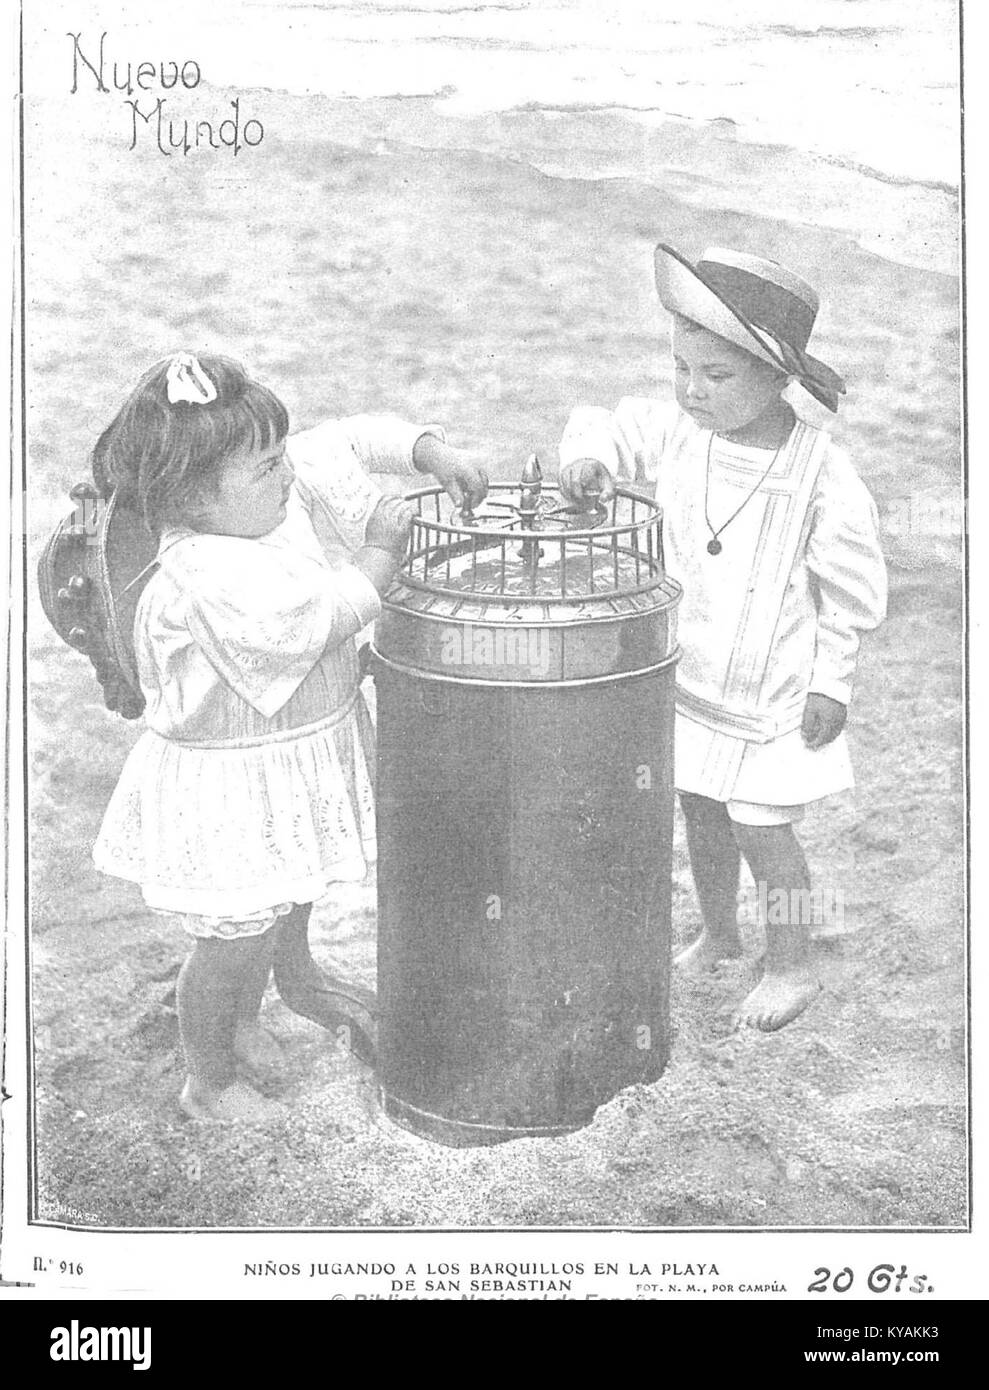 Niños jugando a los barquillos en la playa de San Sebastián, de Campúa, Nuevo Mundo, 17 de julio de 1911 Stock Photo